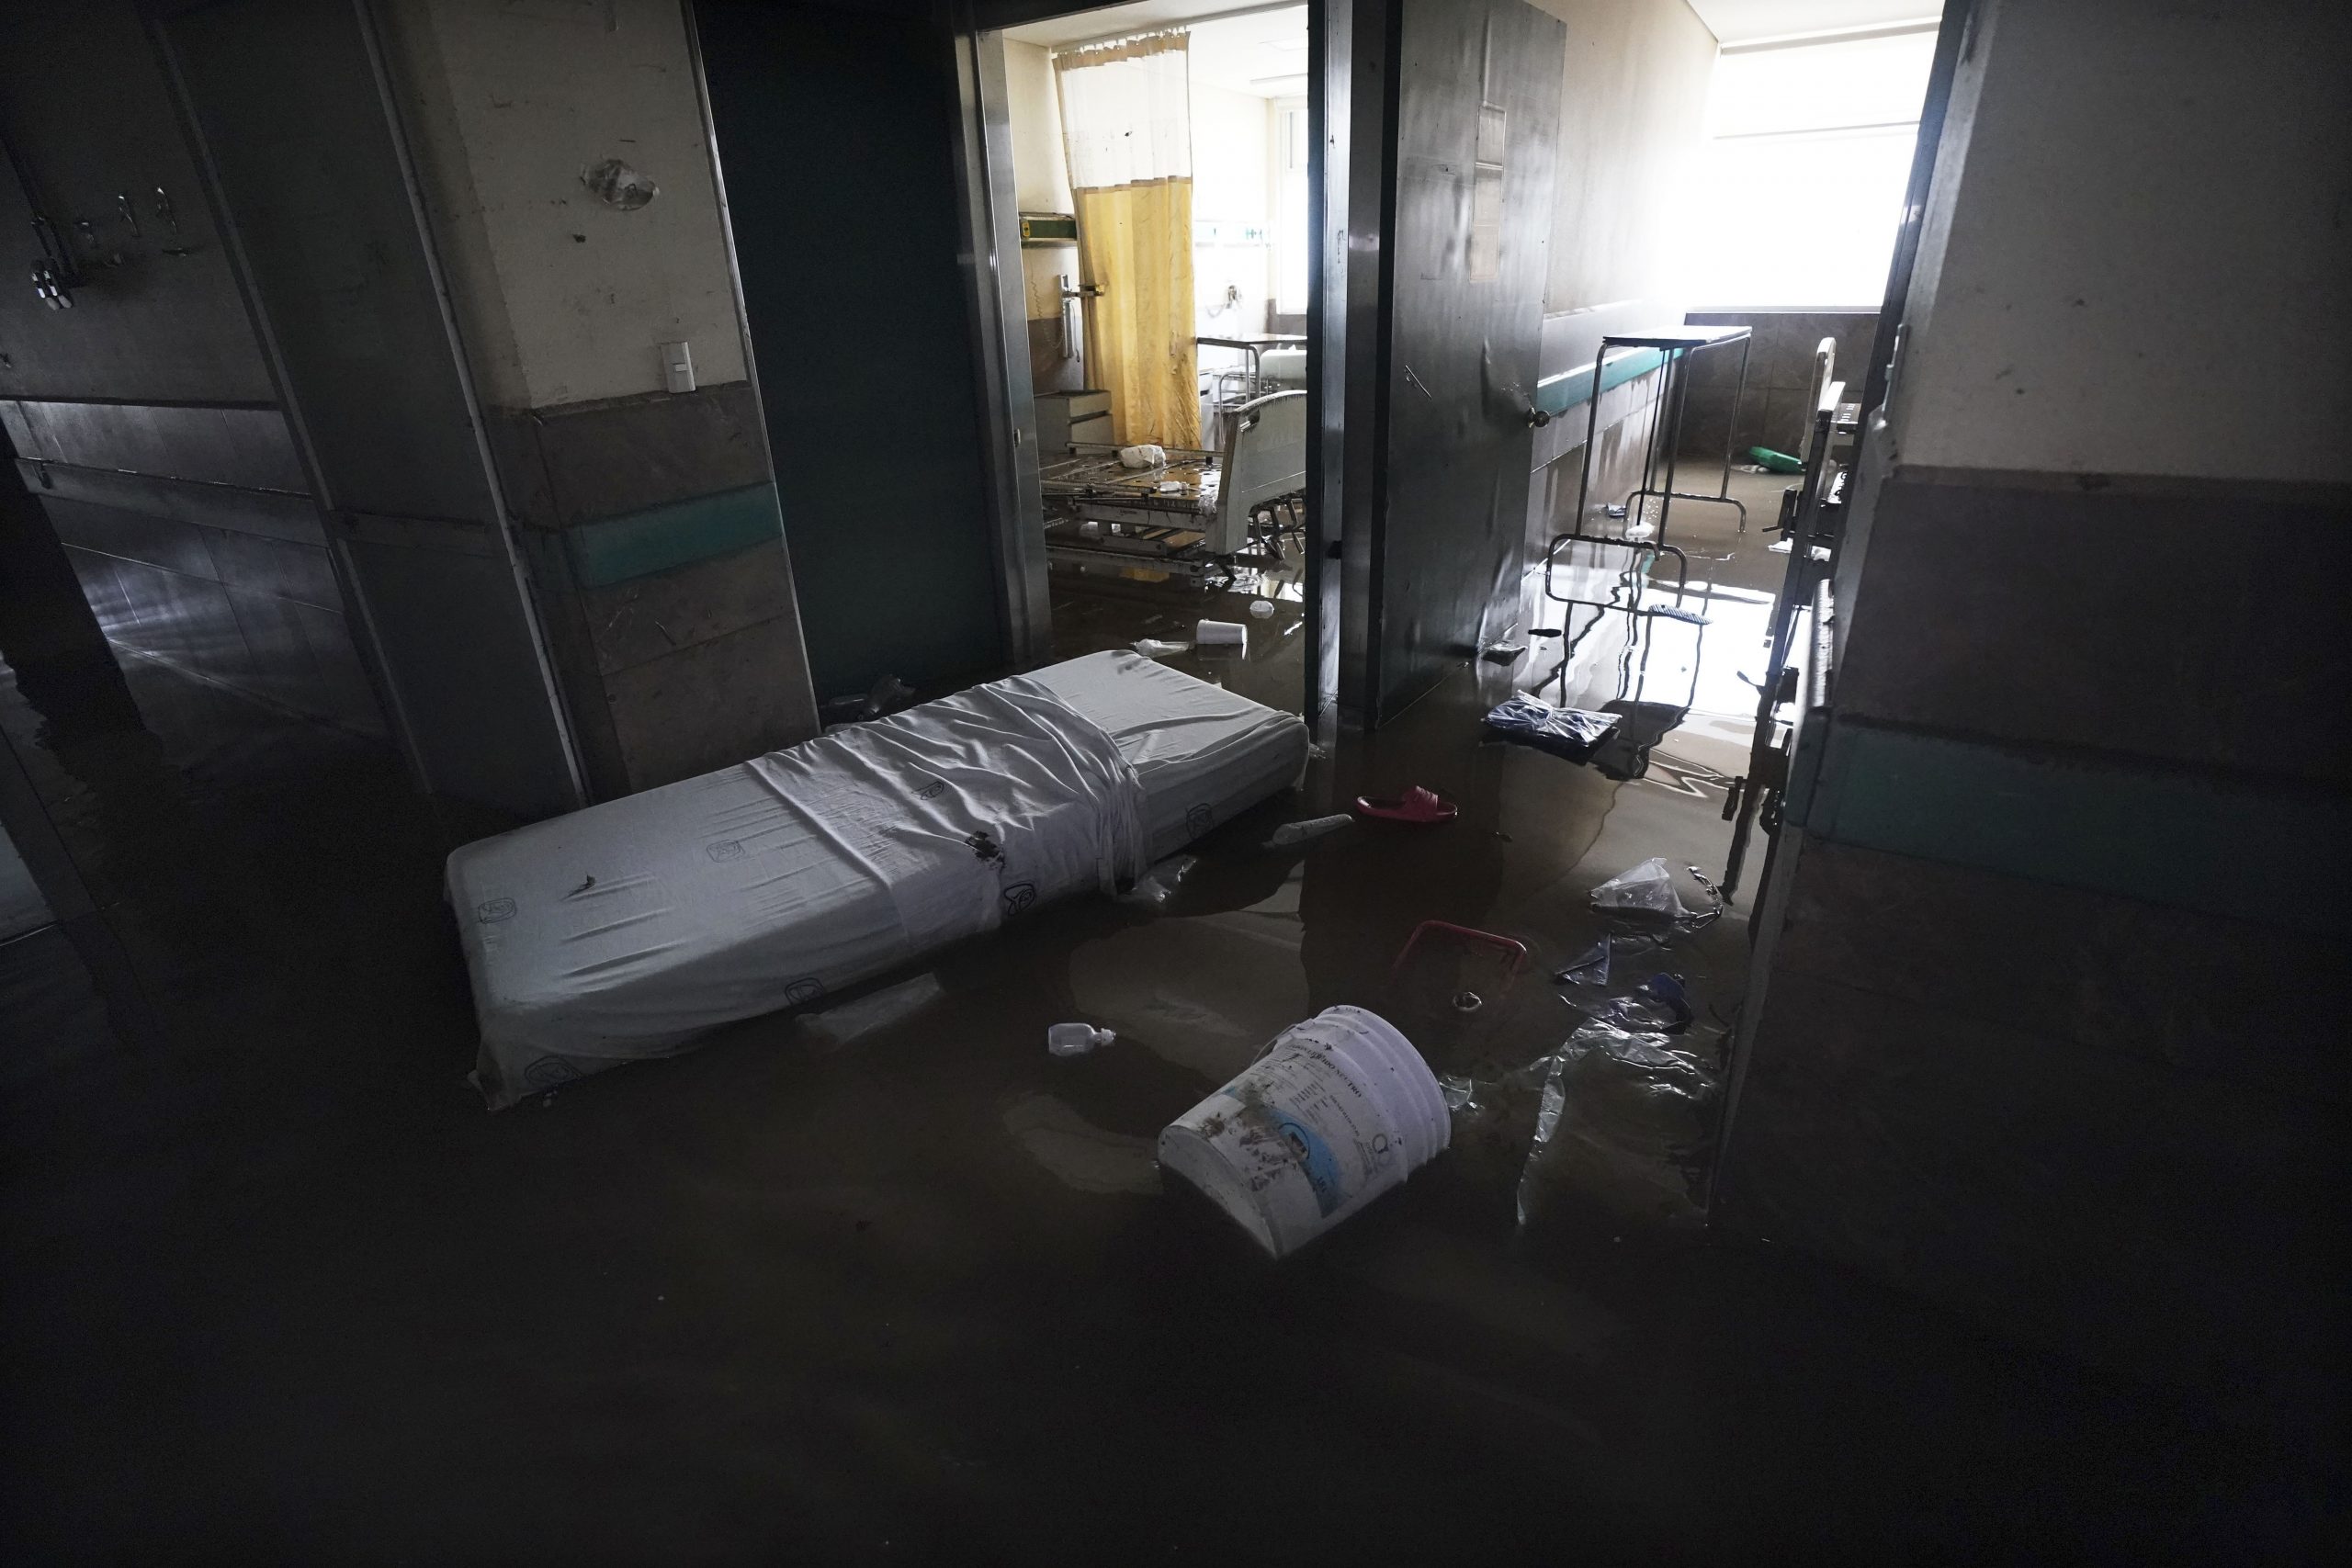 水灾停电氧气供应中断 墨西哥中部医院17病人亡